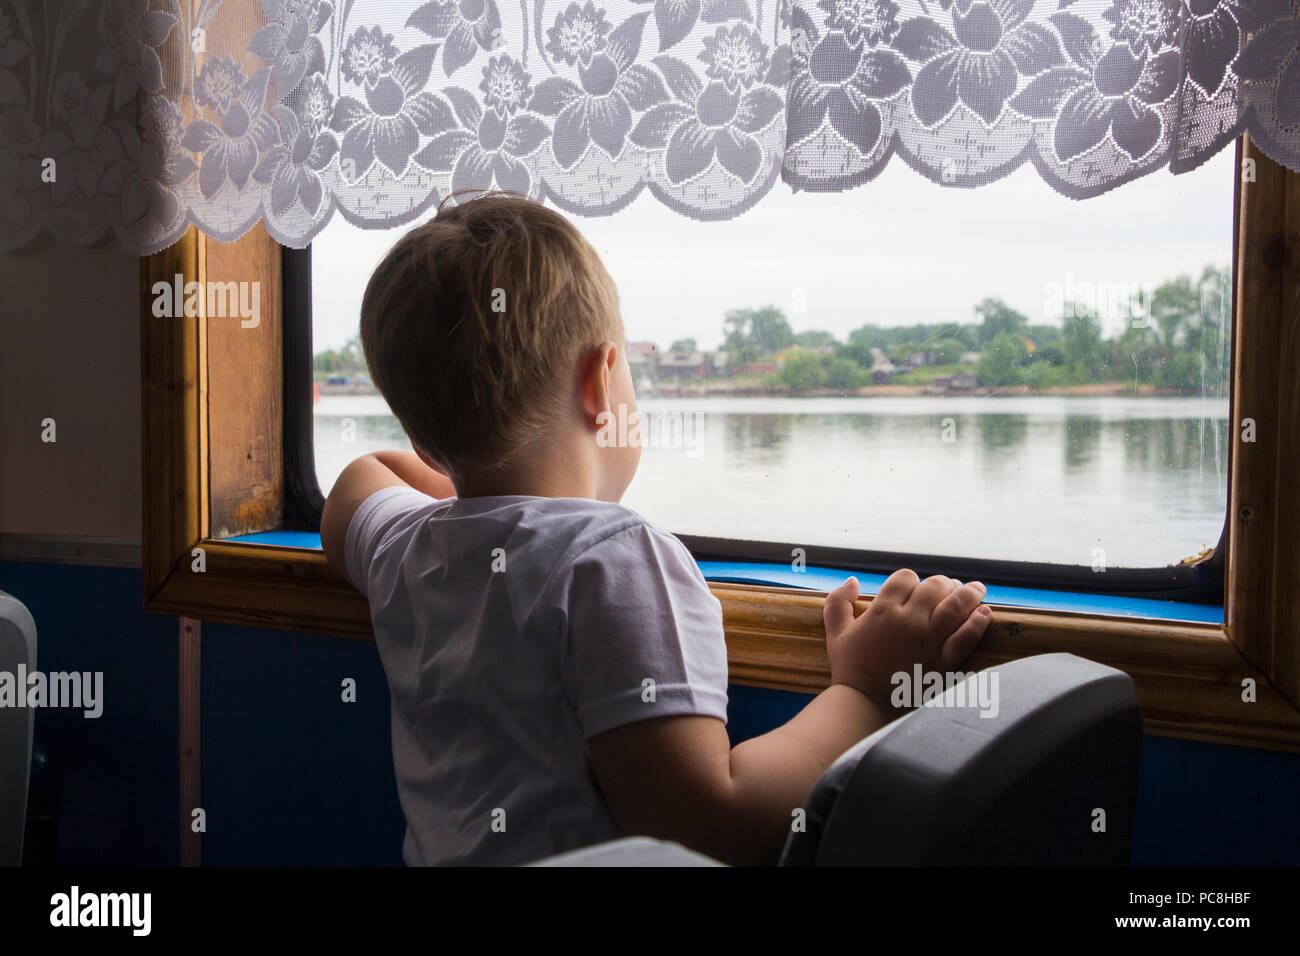 Un garçon regarde à travers les fenêtres à la rivière Banque D'Images